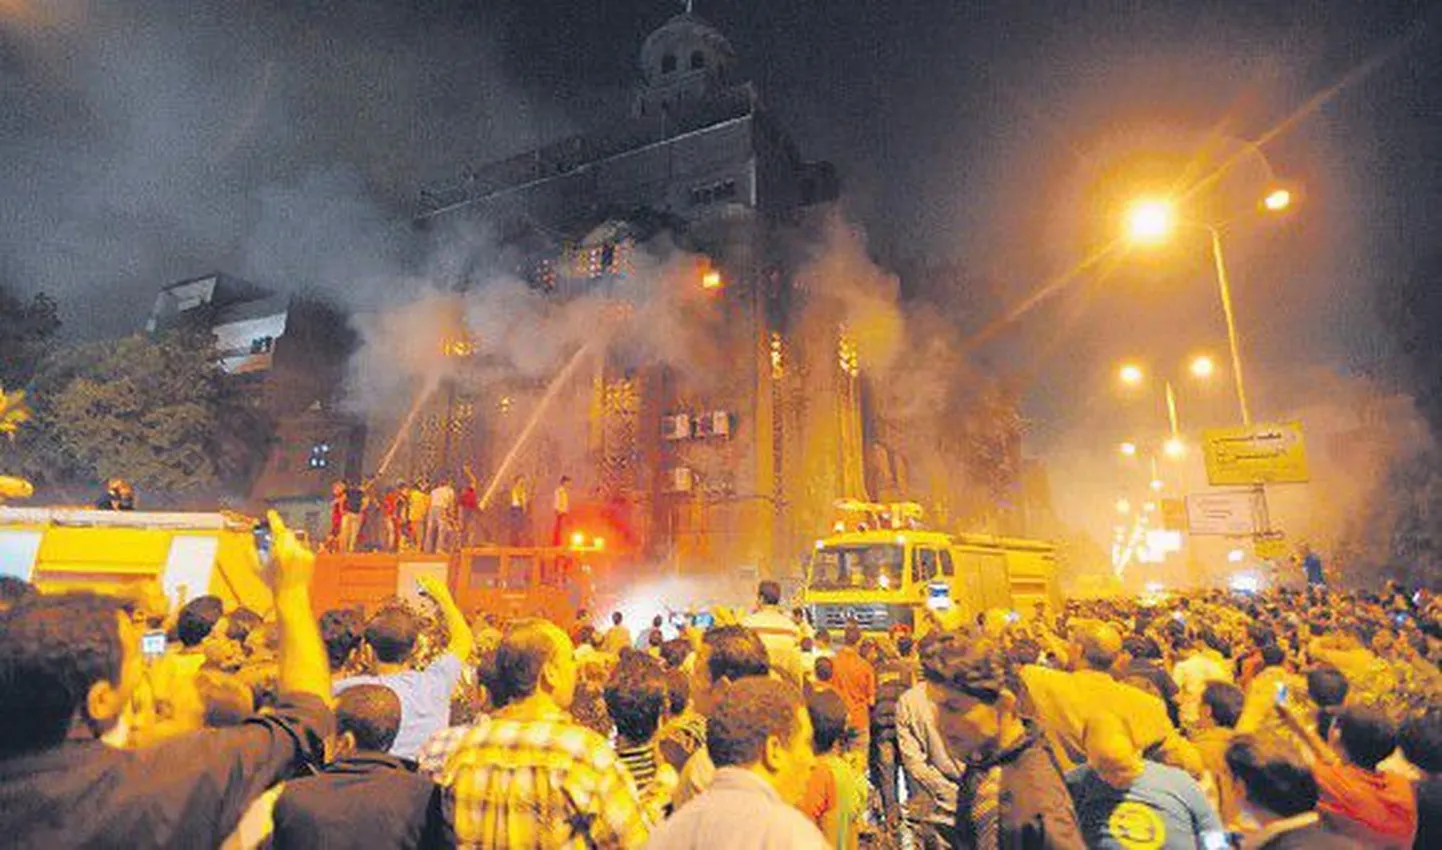 В субботу, 7 мая, в Каире в районе столкновений было подожжено несколько зданий, в т.ч. две церкви.